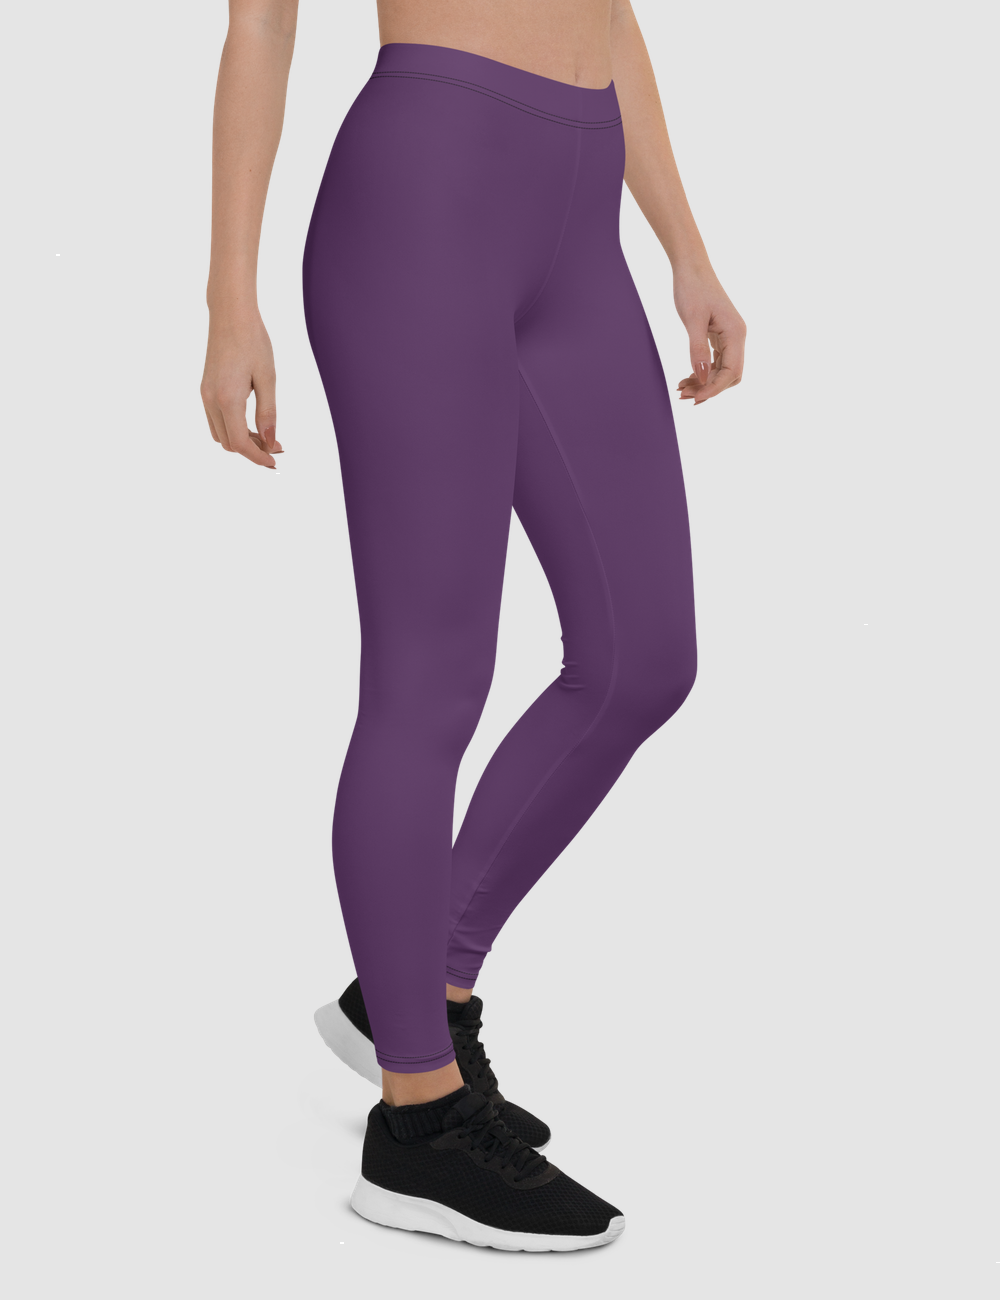 Imperial Purple | Women's Standard Yoga Leggings OniTakai